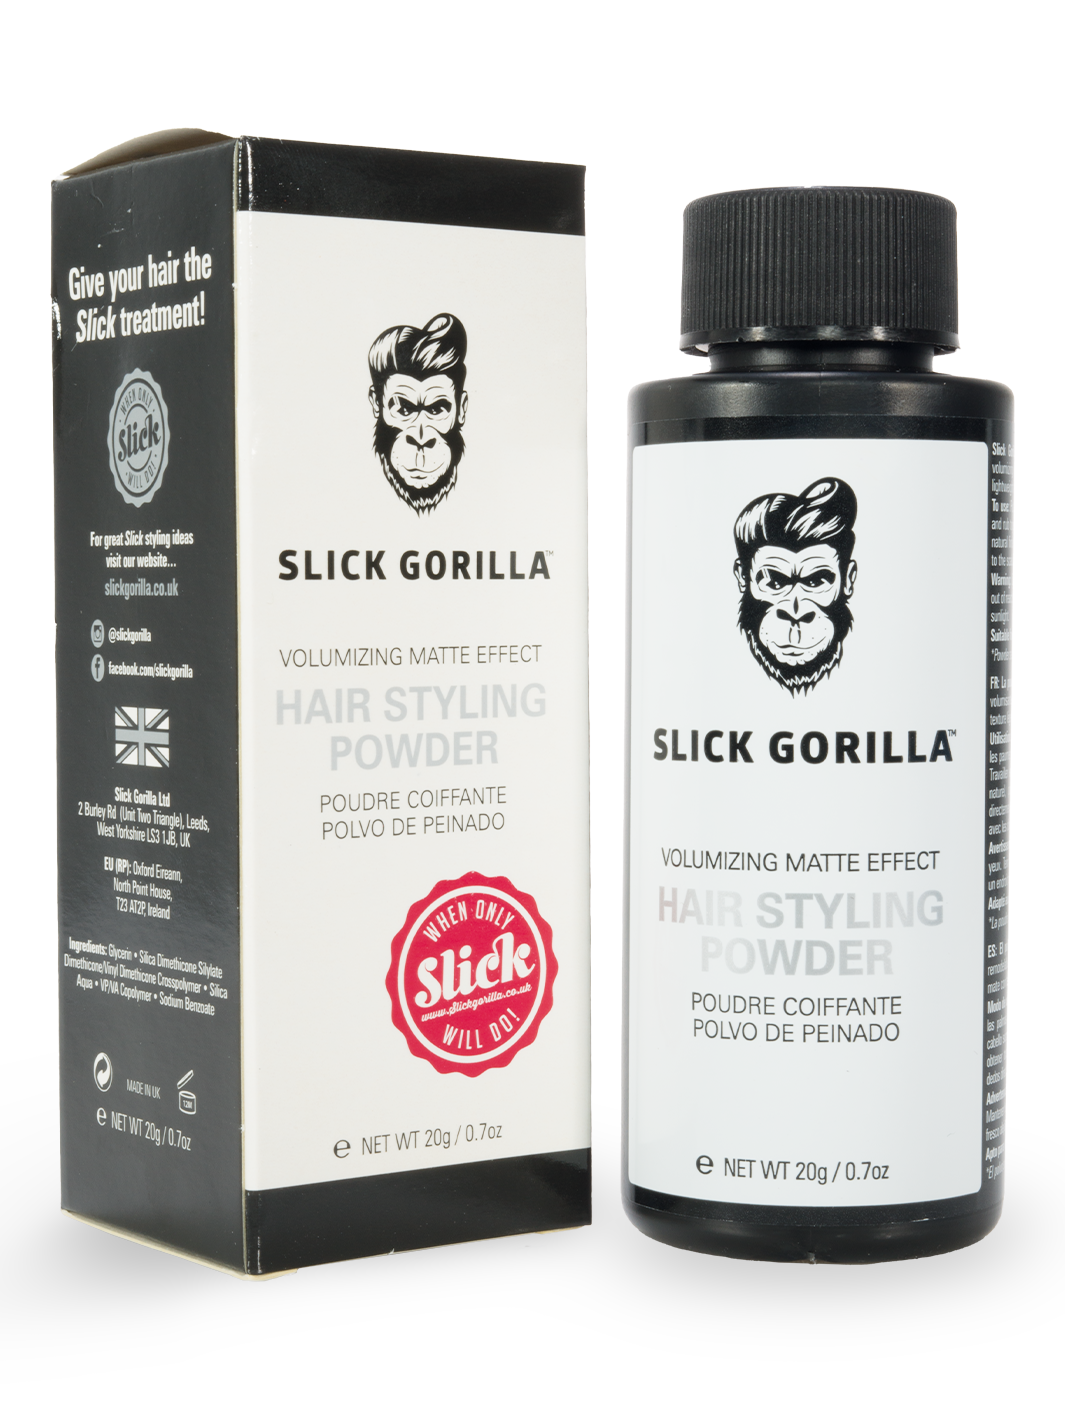 Slick Gorilla Hair Styling Powder (20g/0.7oz)